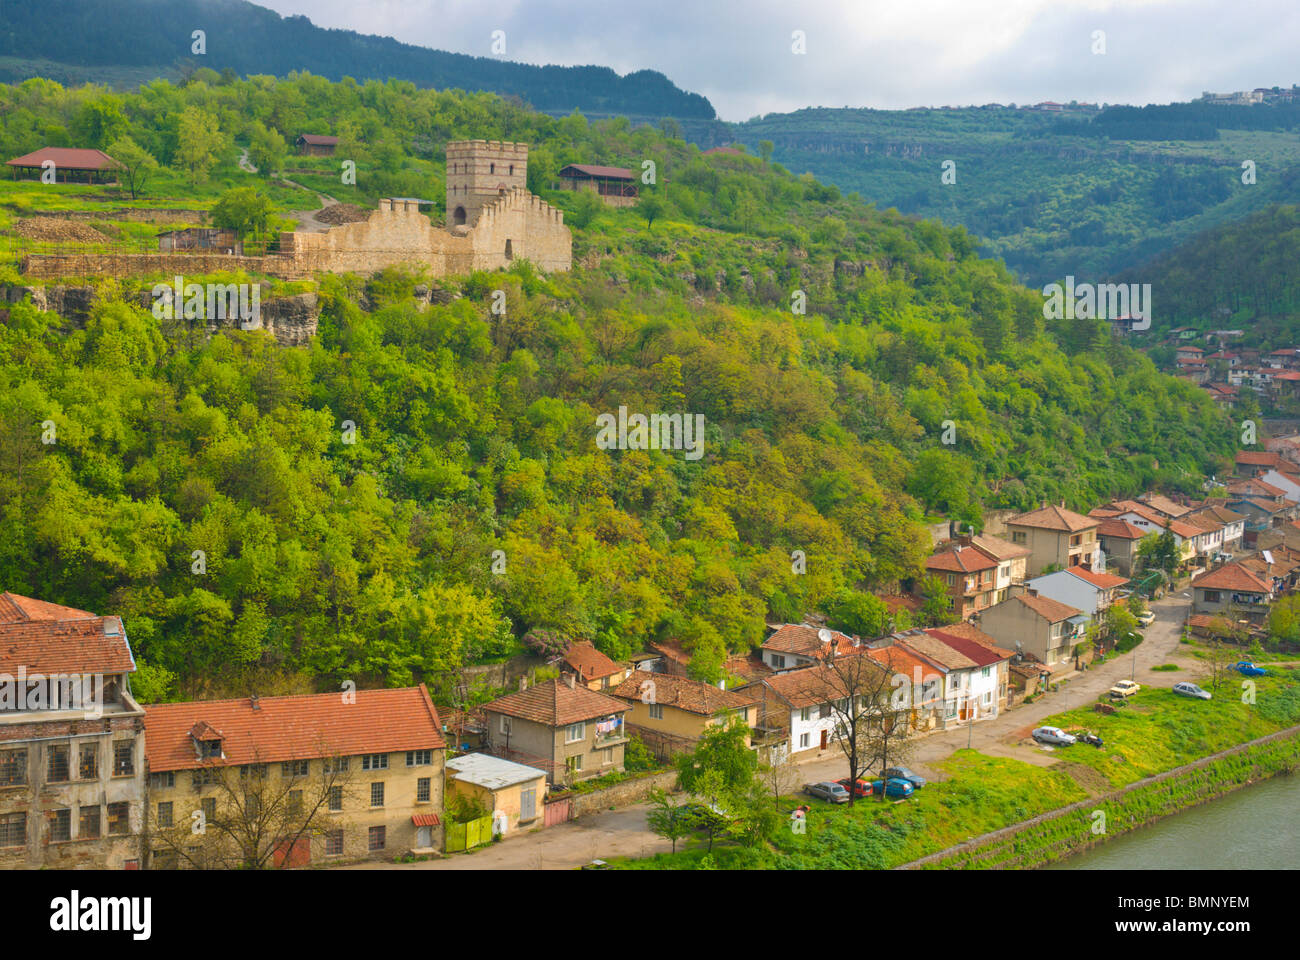 Riverlside maisons et murs de défense le long de la rivière Yantra Veliko Tarnovo Bulgarie centrale centrale Balkans Europe Banque D'Images